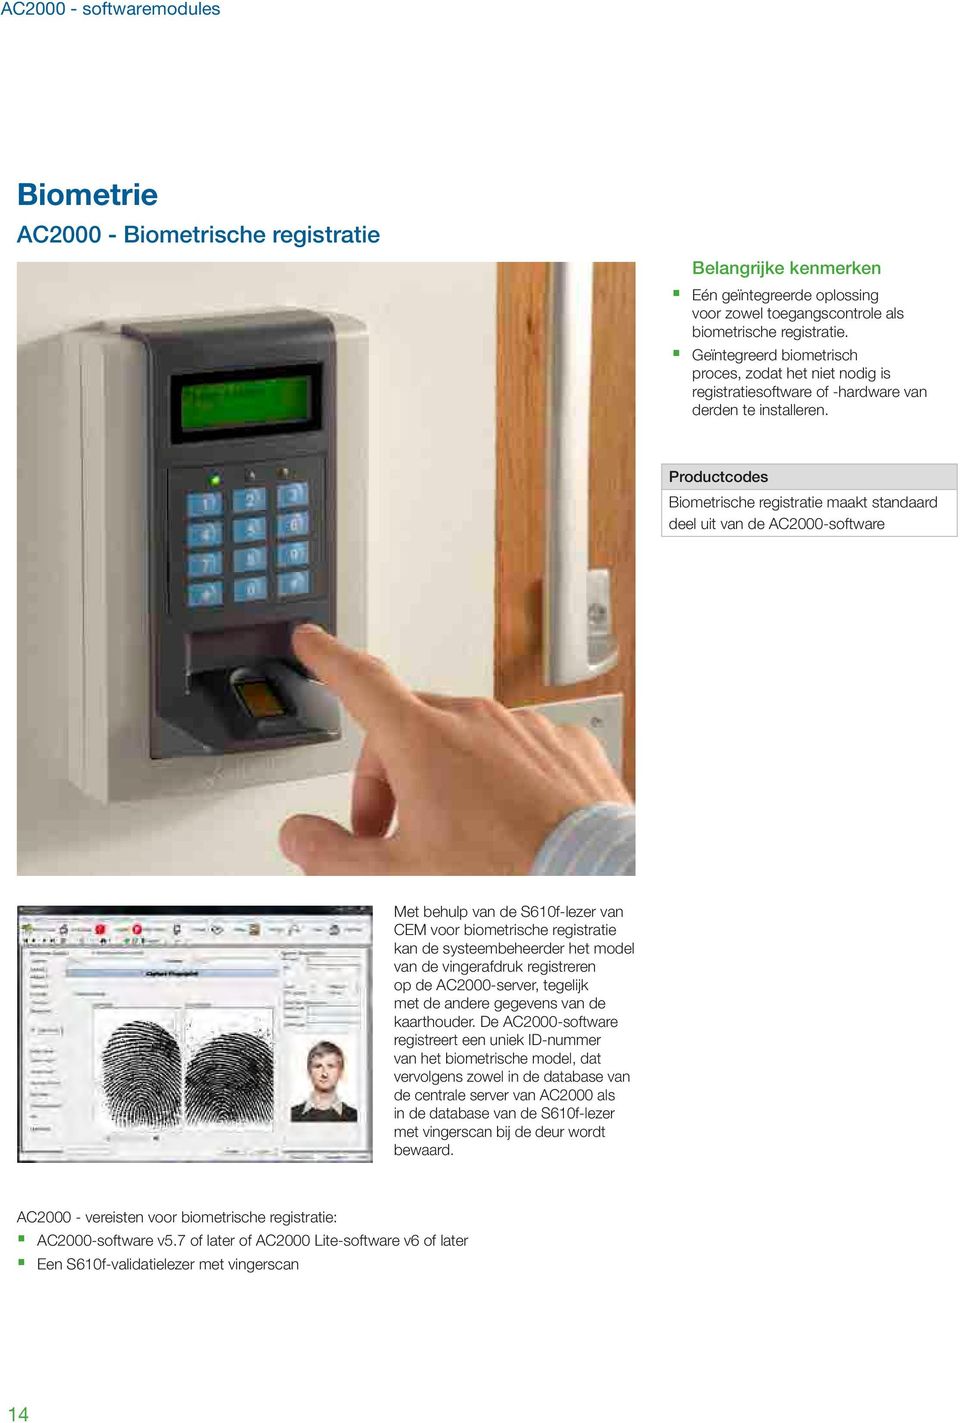 Biometrische registratie maakt standaard deel uit van de AC2000-software Met behulp van de S610f-lezer van CEM voor biometrische registratie kan de systeembeheerder het model van de vingerafdruk